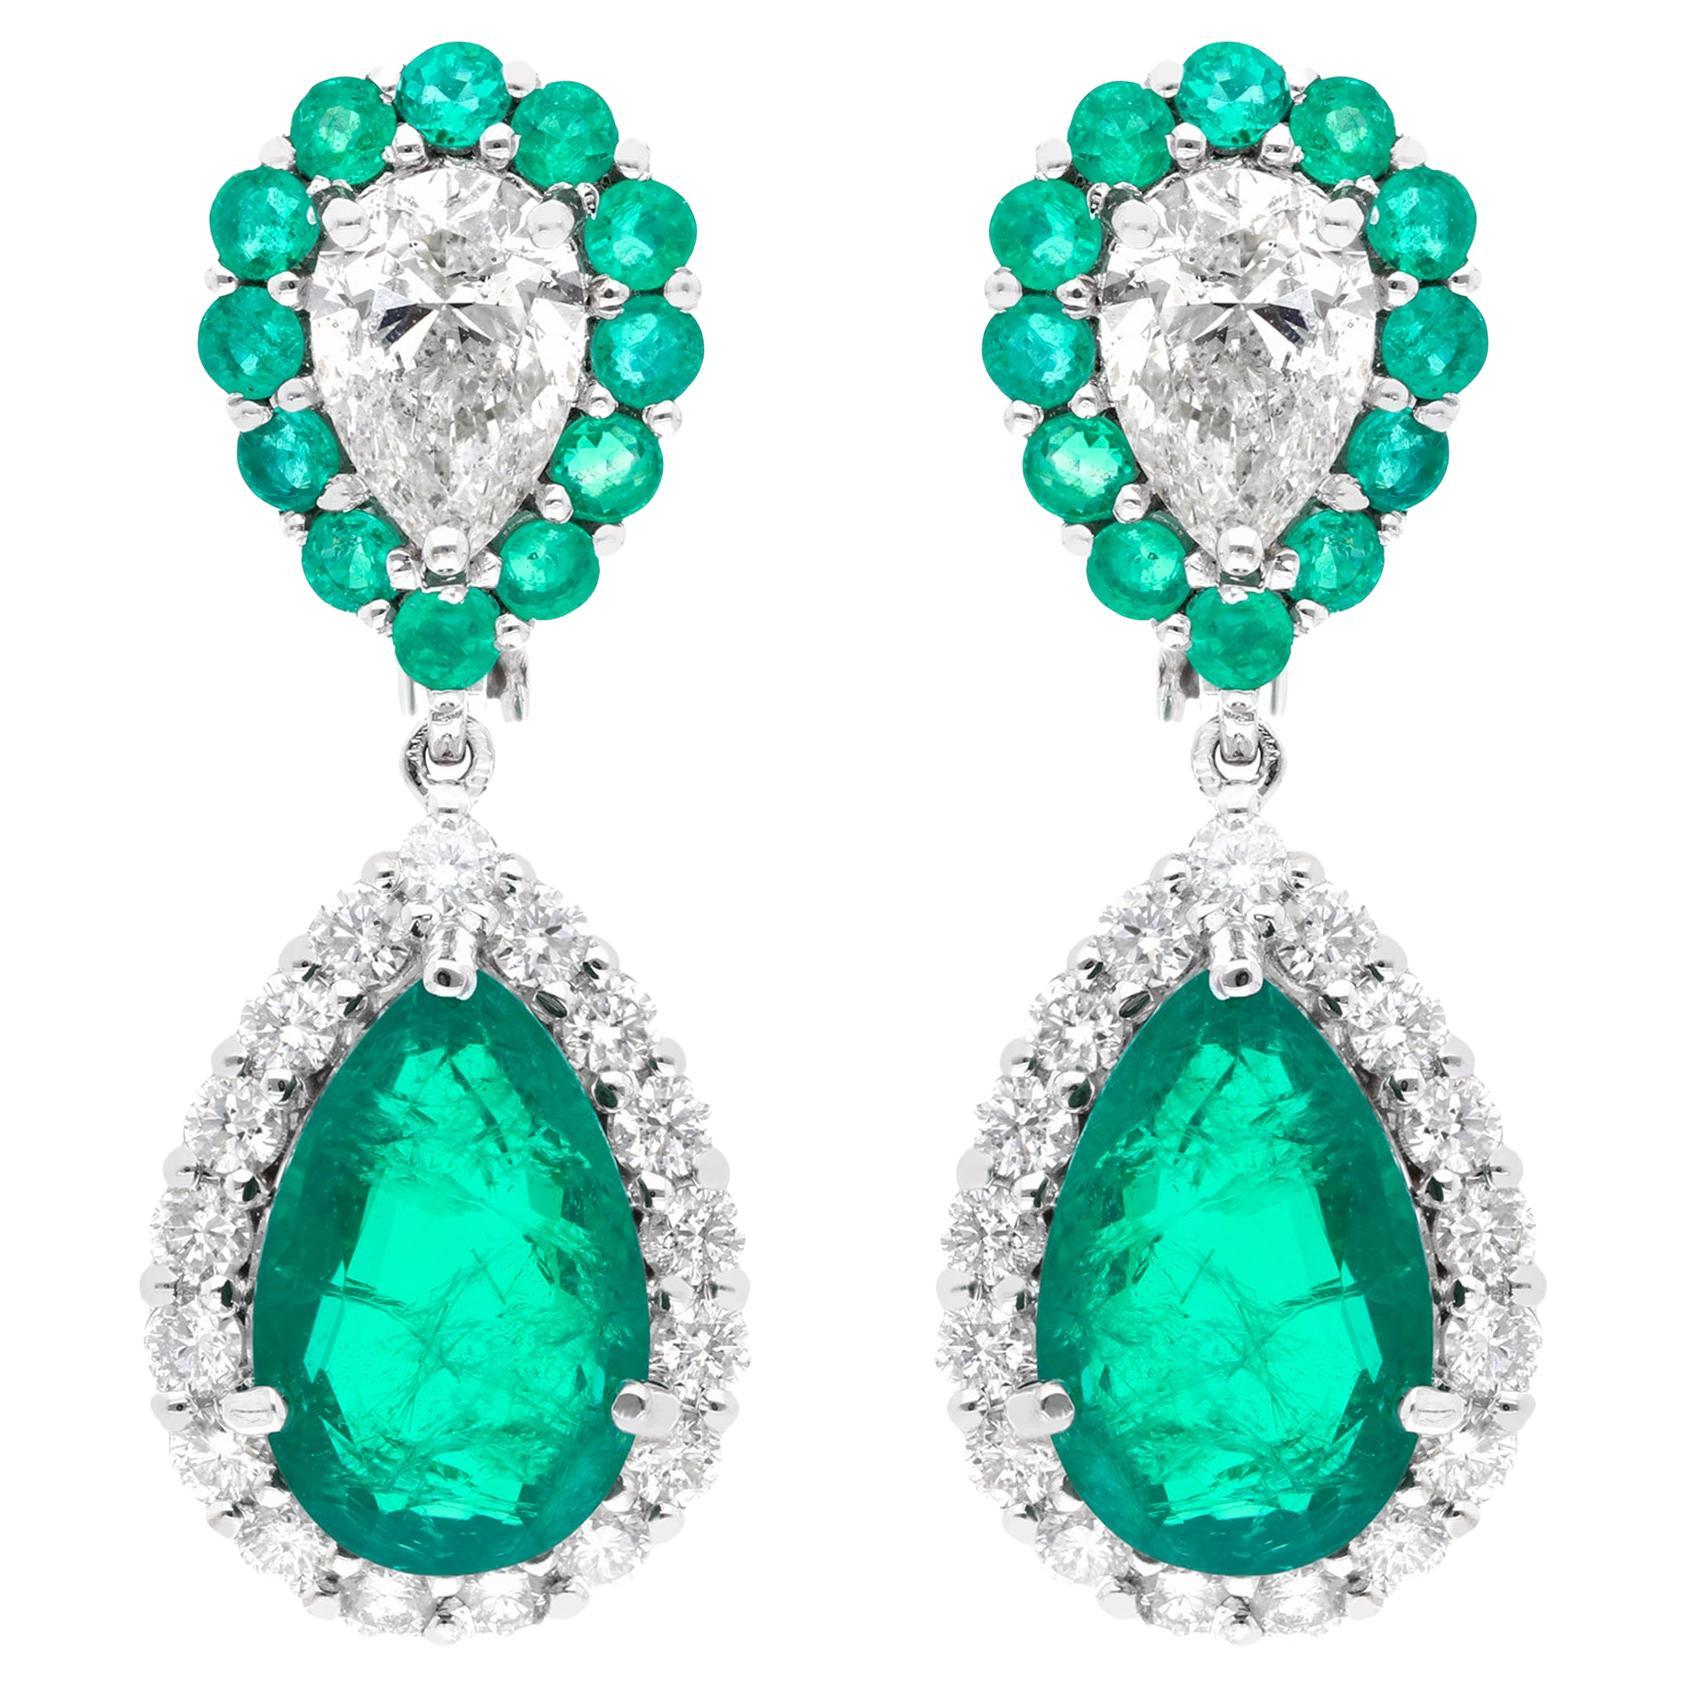 Zambian Emerald Gemstone Dangle Earrings Diamond 14 Karat White Gold Jewelry For Sale